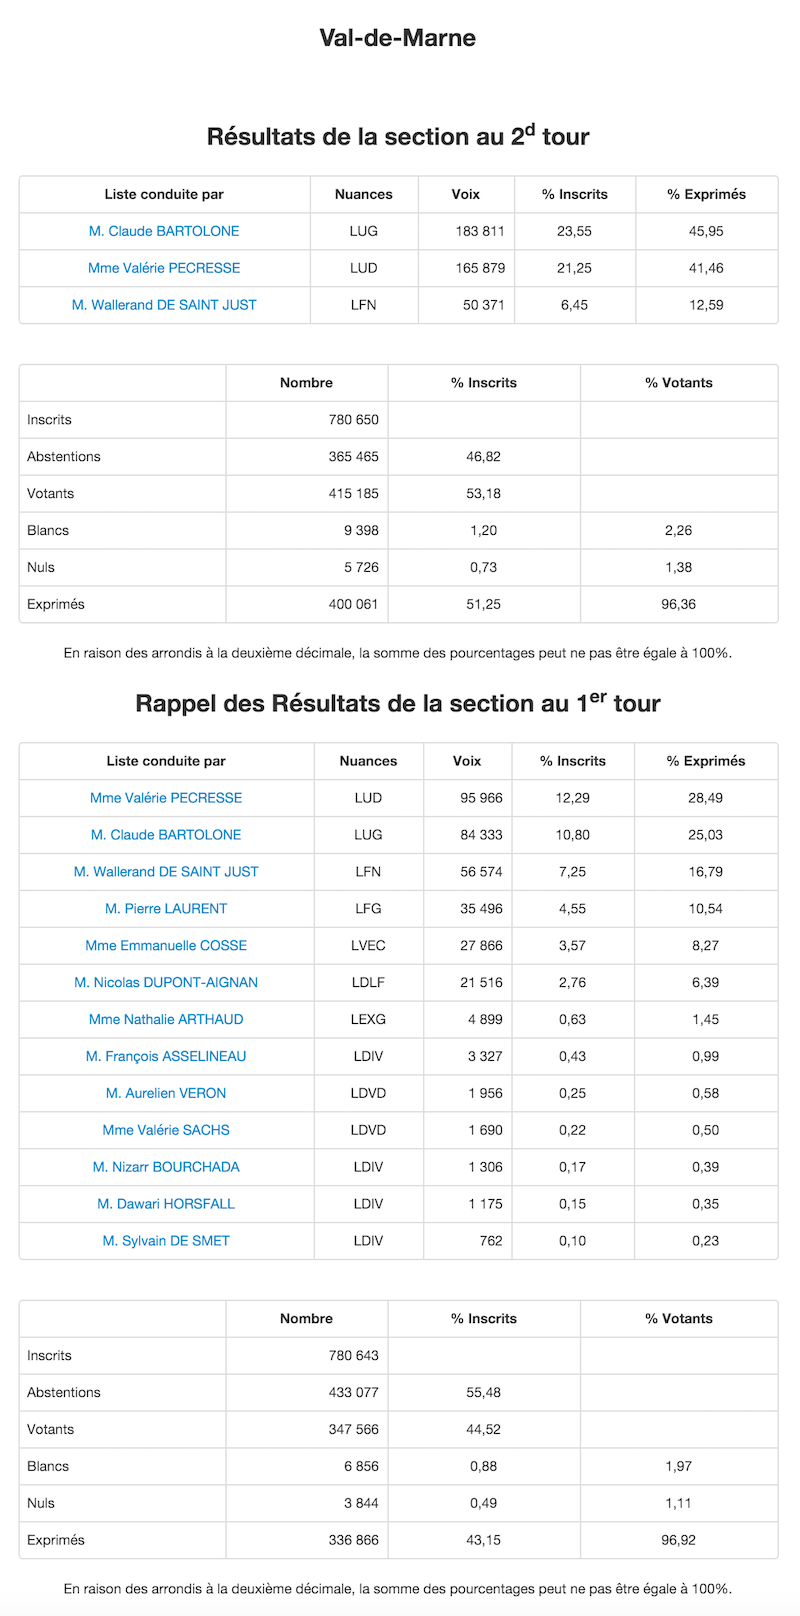 Régionales 2015 - 2nd et 1er tour dans le Val de Marne © Ministère de l'Intérieur